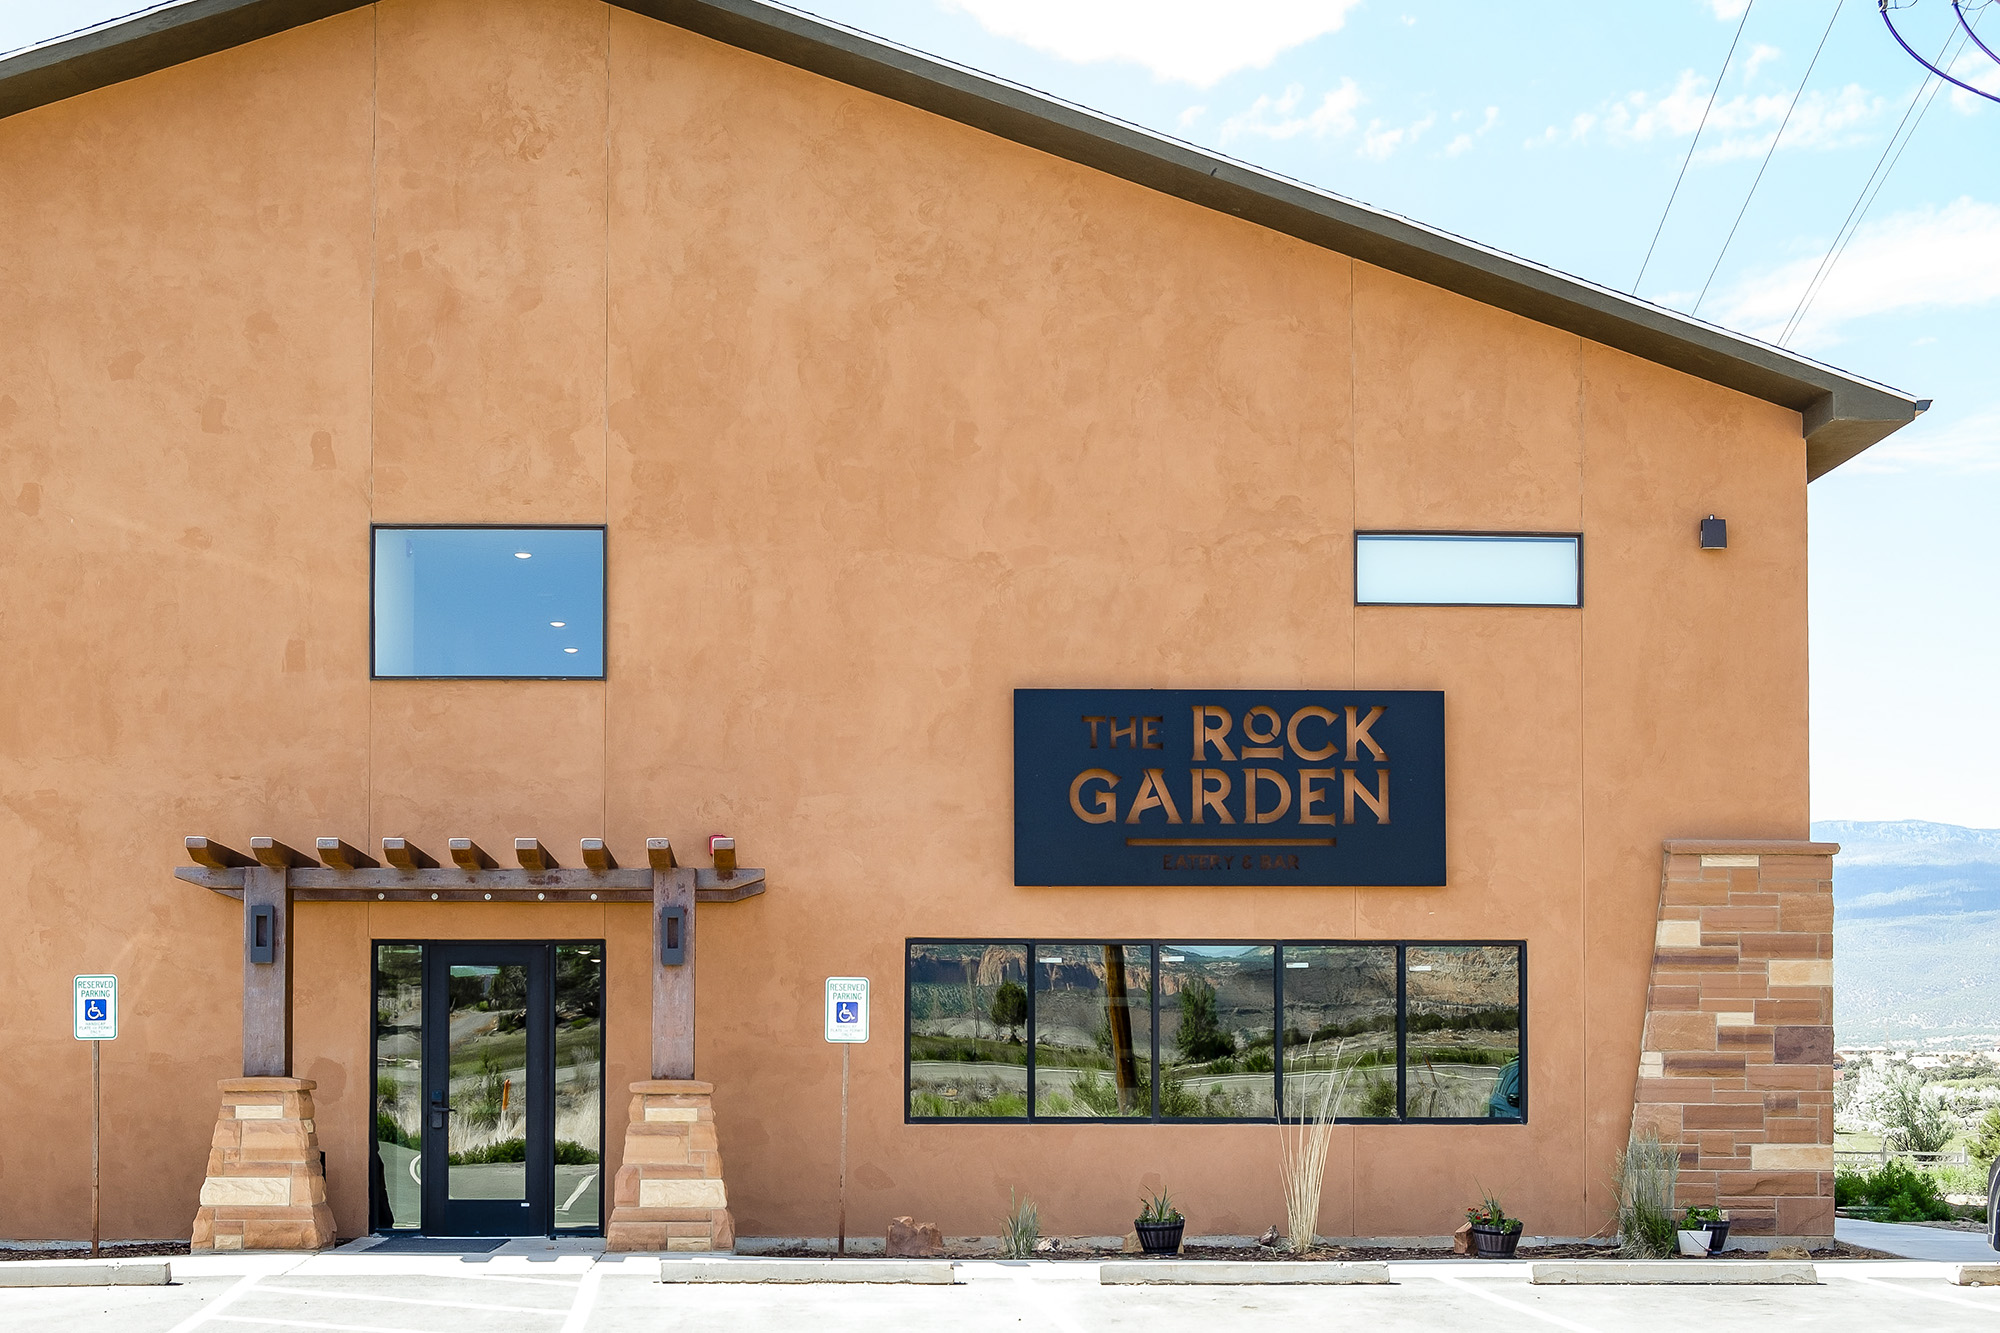 The Rock Garden Eatery and Bar